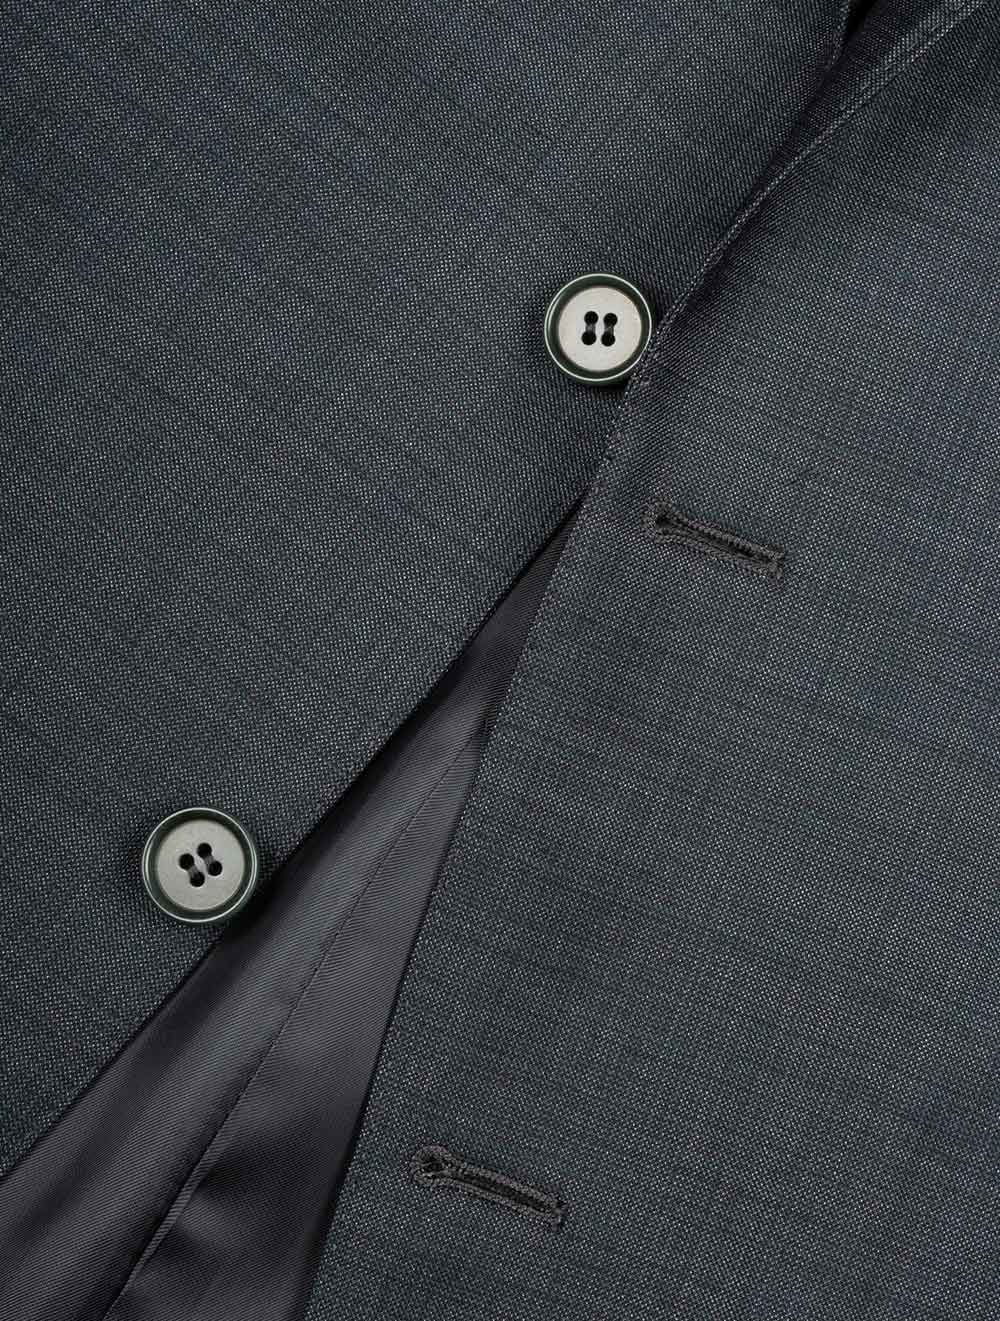 Subtle Check Suit Grey